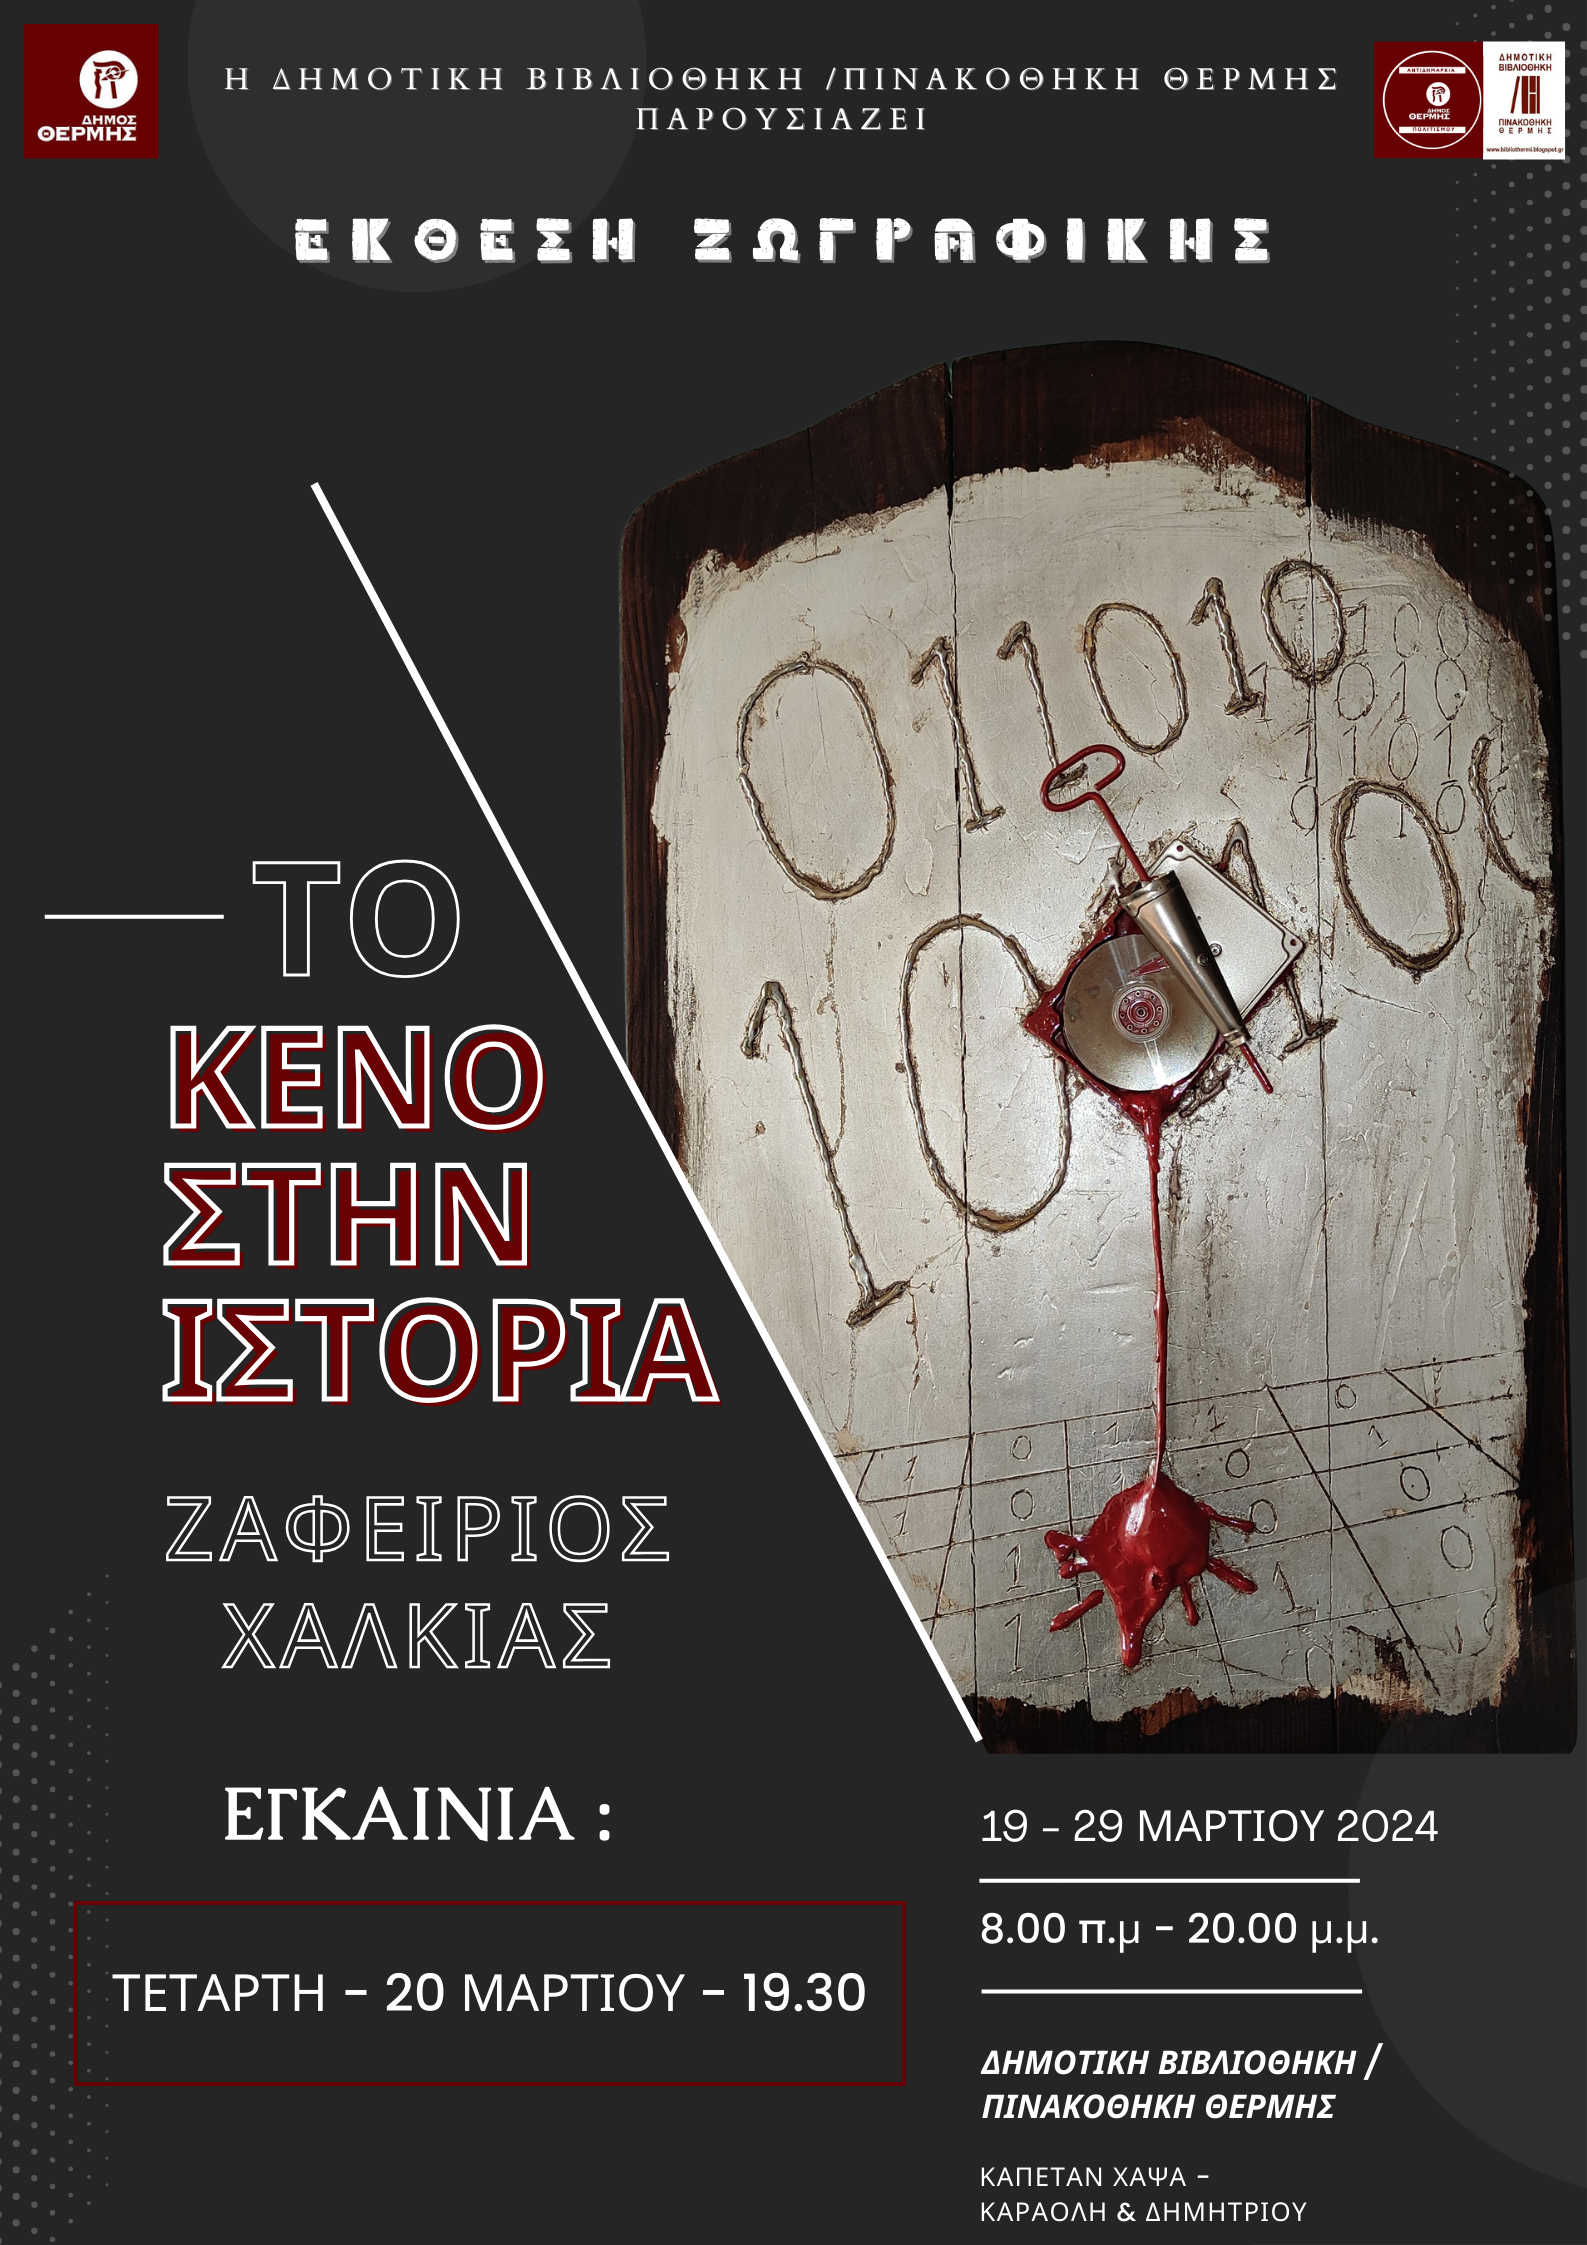 Αφίσα που αναφέρεται στην έκθεση ζωγραφικής του Ζαφειρίου Χαλκιά στο Δήμο Θέρμης 19 έως 29 Μαρτίου 2024